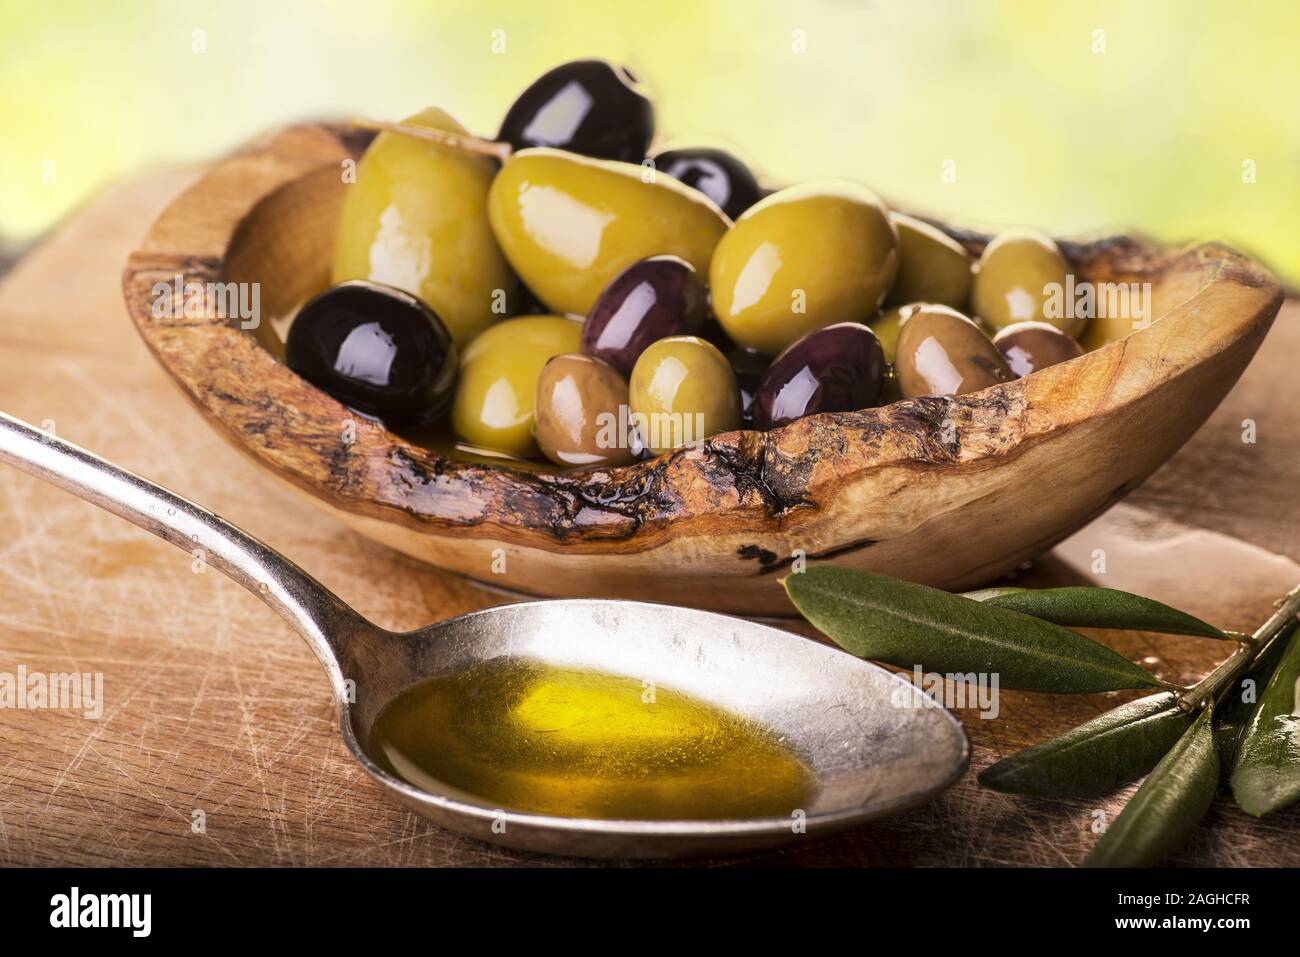 Sur la table de bois rustique, un bol avec différents types d'olives et une cuillère pleine d'huile Banque D'Images